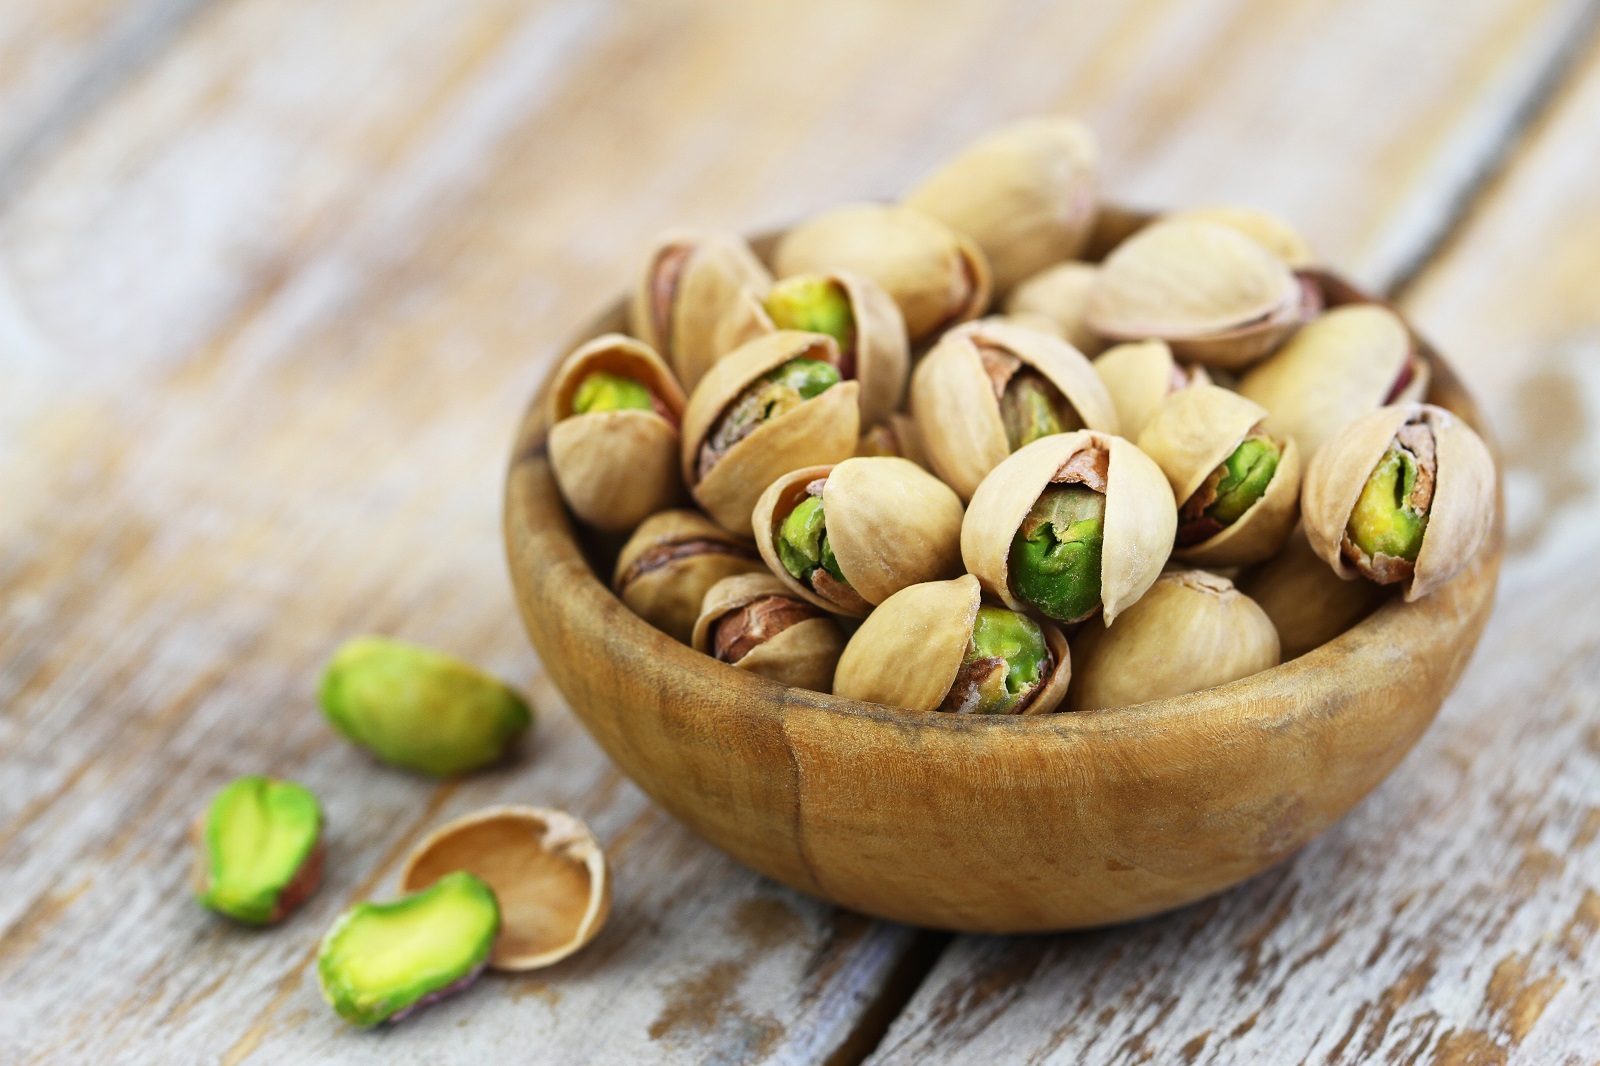 Croquantes et délicieuses pistaches, fruits du pistachier. © graletta, Adobe Stock